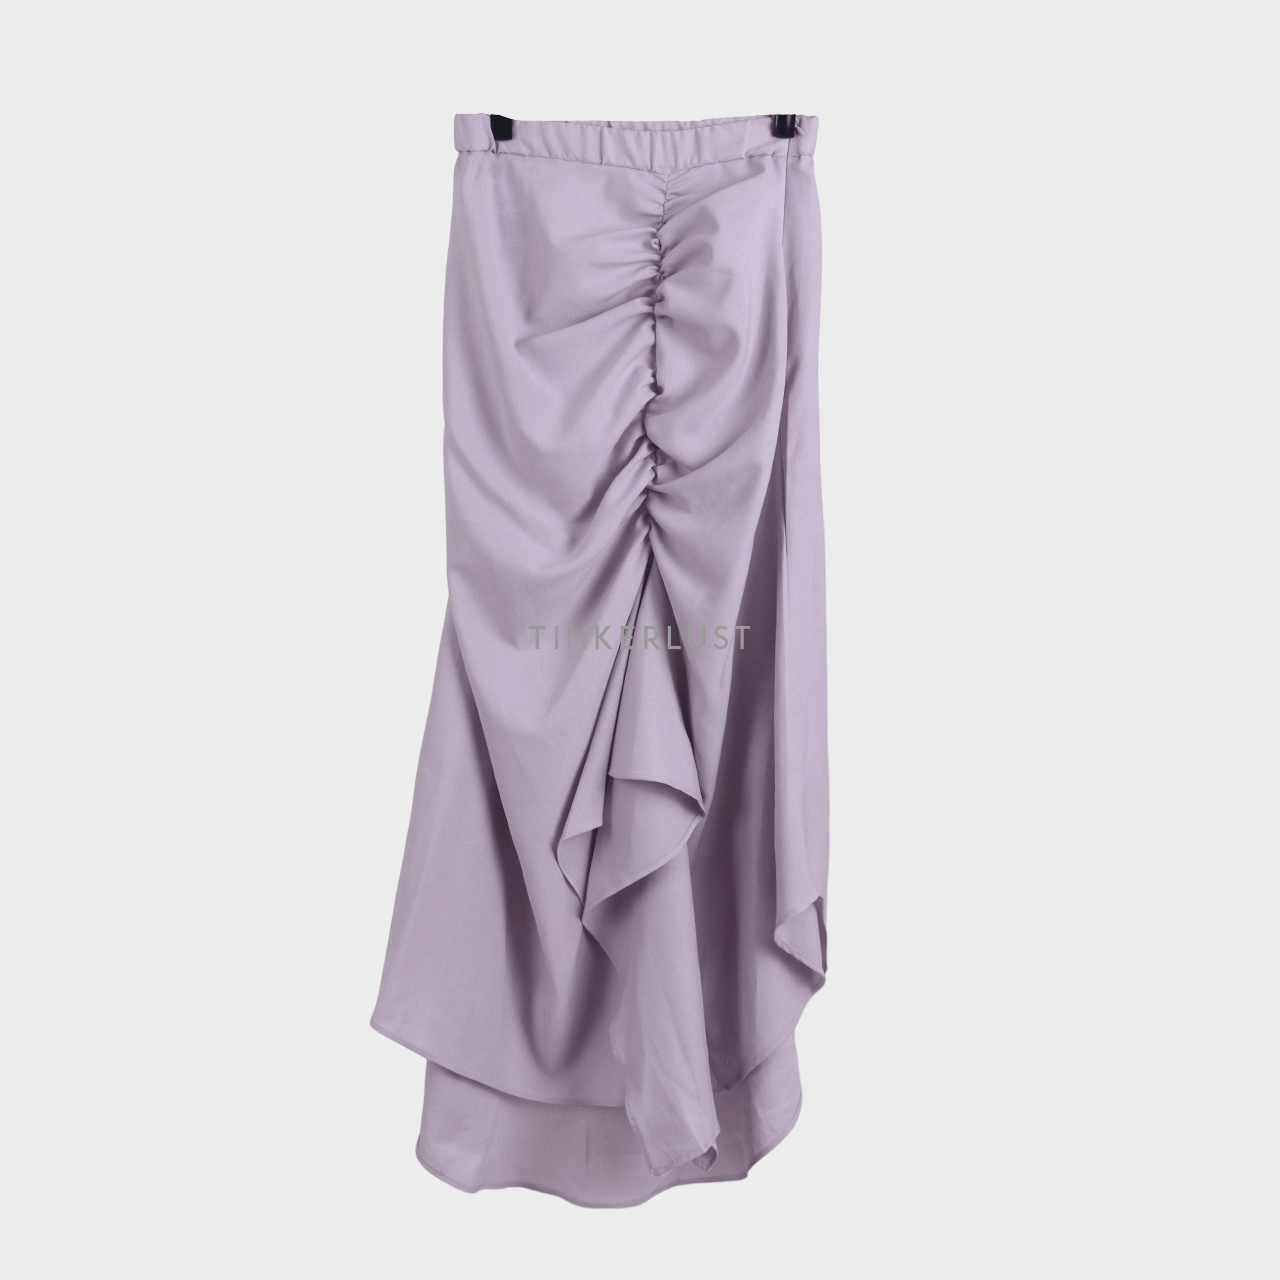 Neat & Pleats Lilac Maxi Skirt